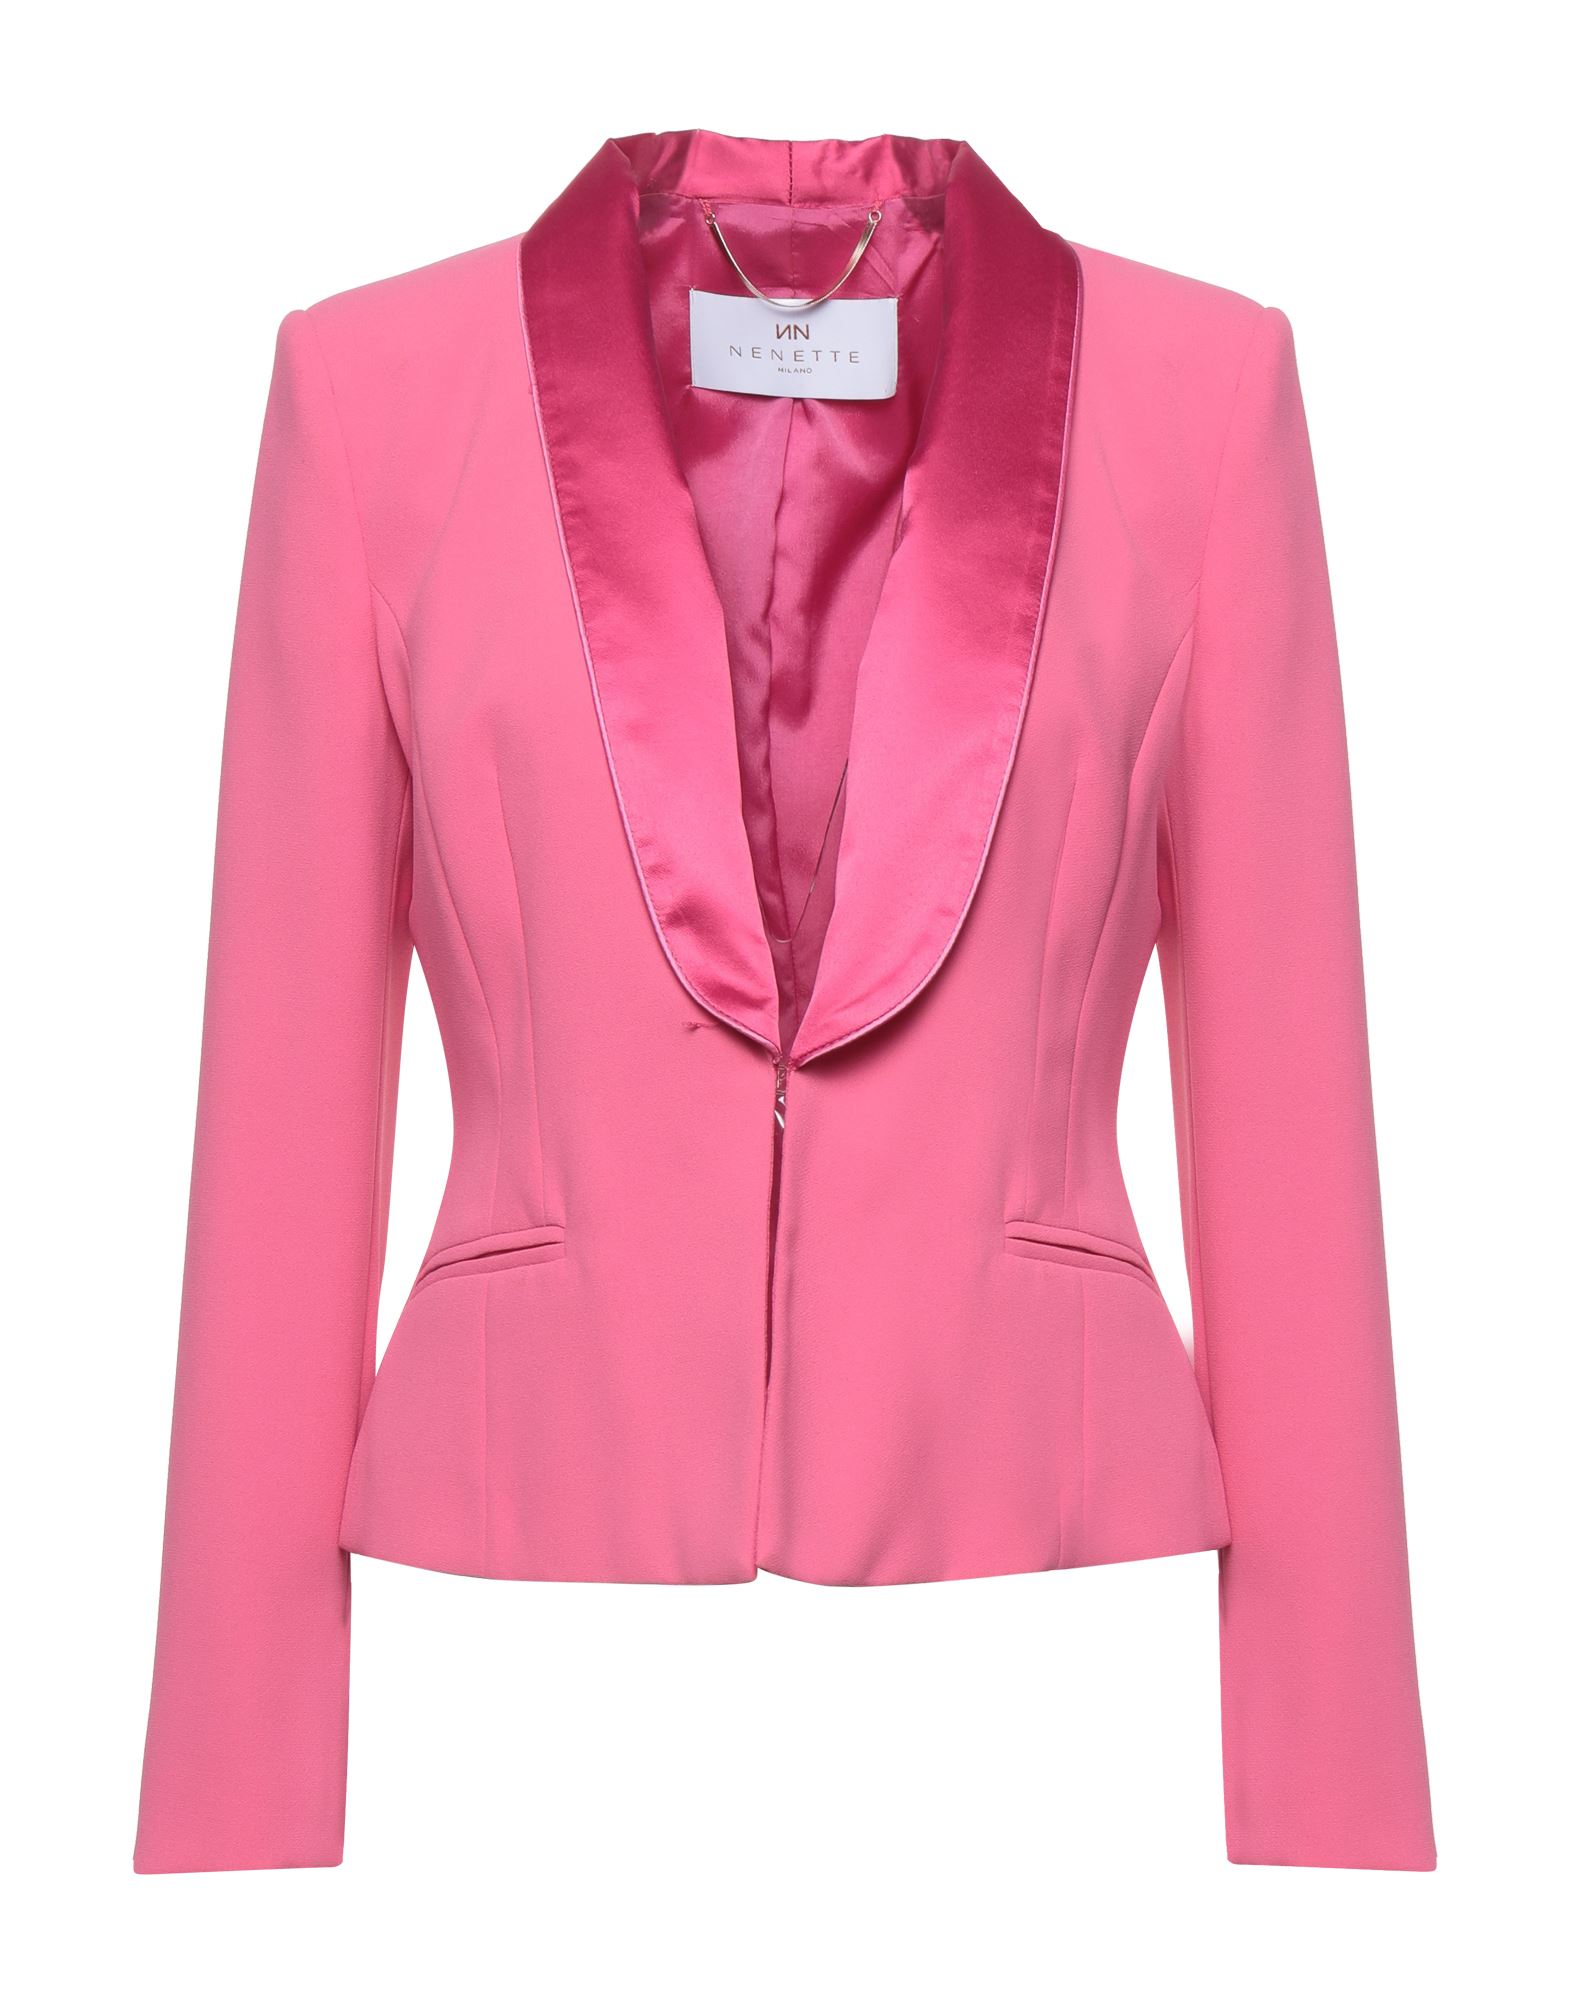 Nenette Suit Jackets In Pink